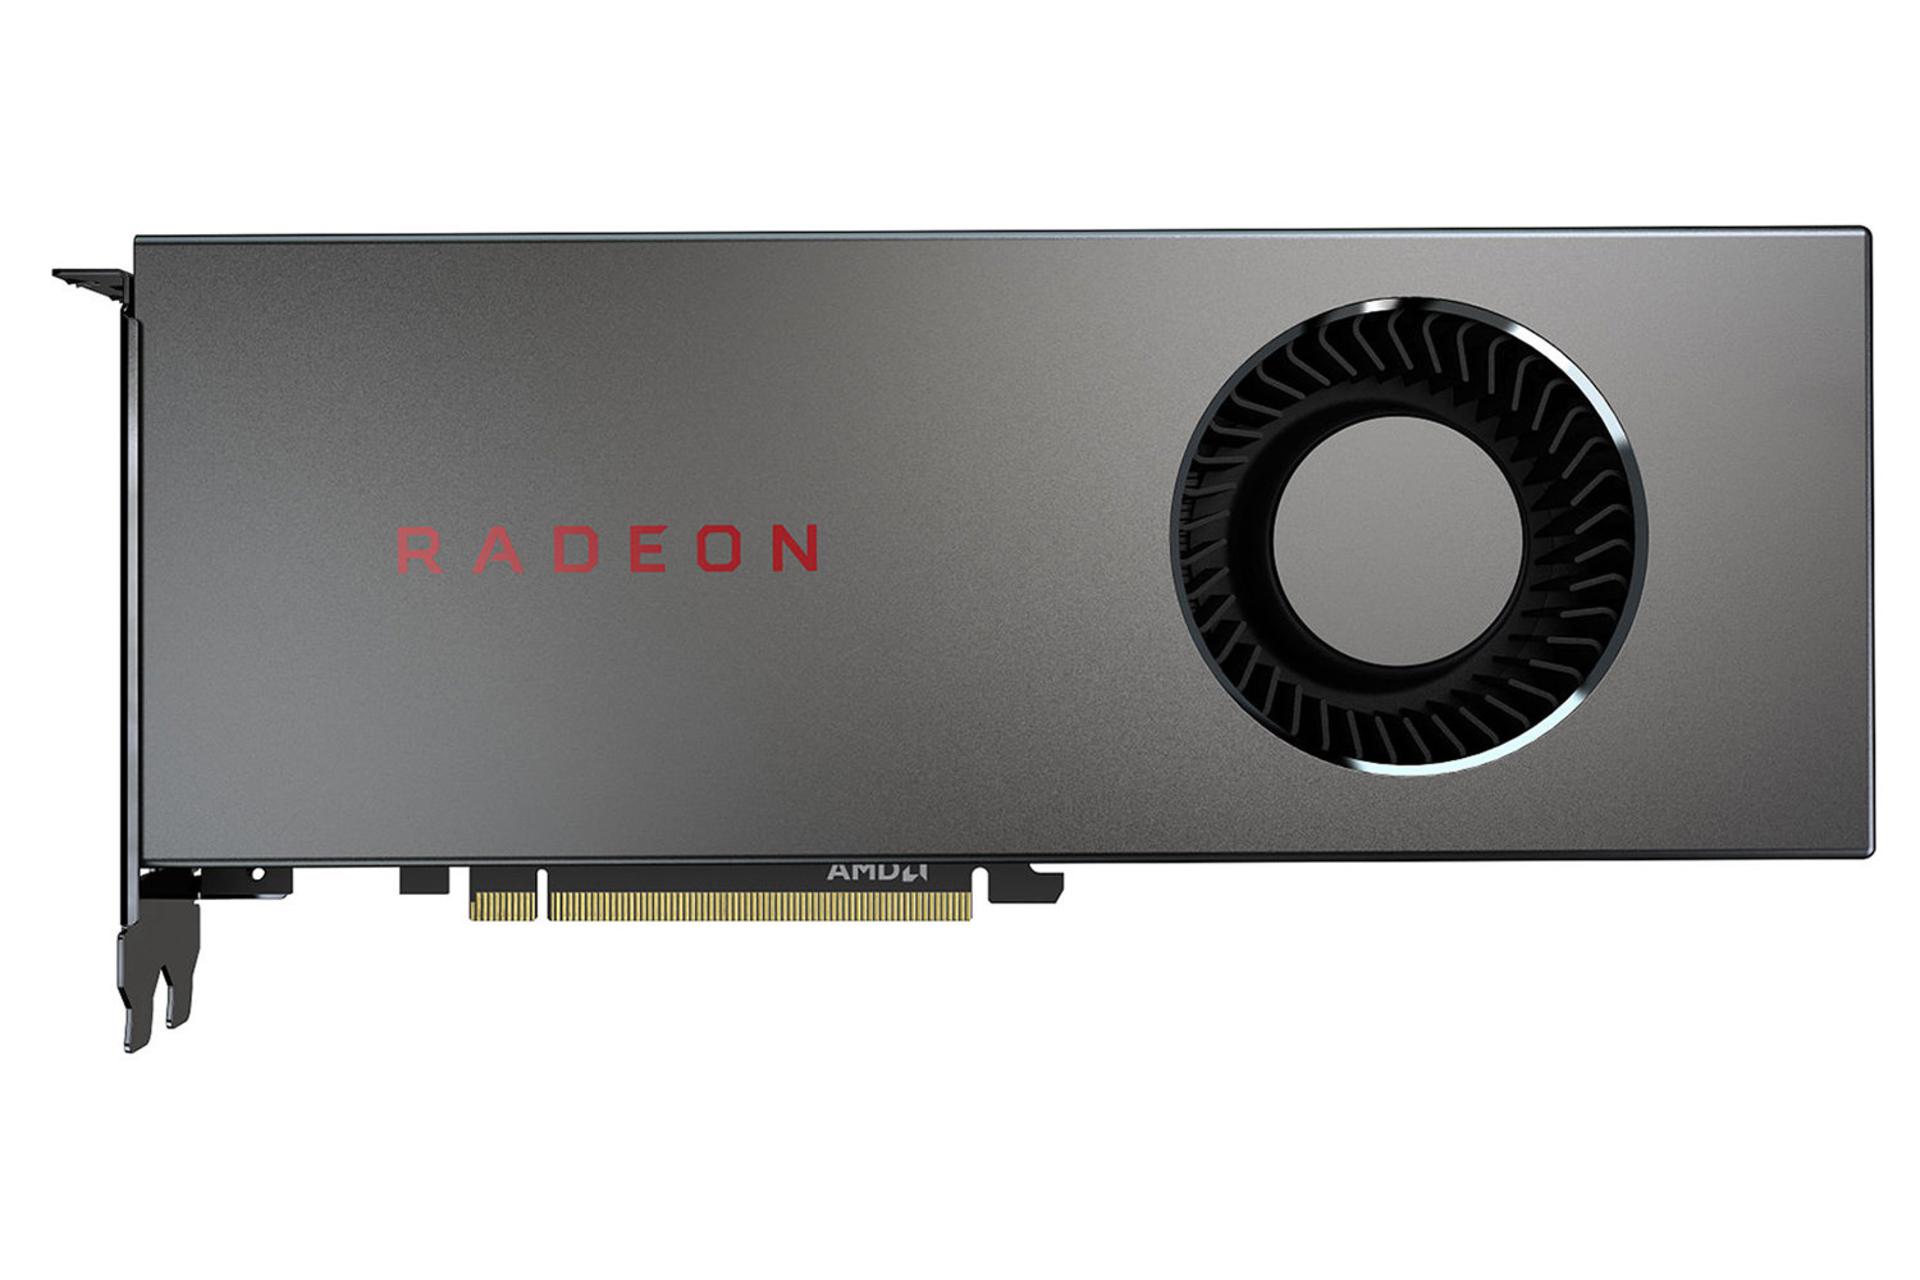 کارت گرافیک AMD Radeon RX 5700 نمای بالا -  فن خروجی هوا / AMD رادئون RX 5700